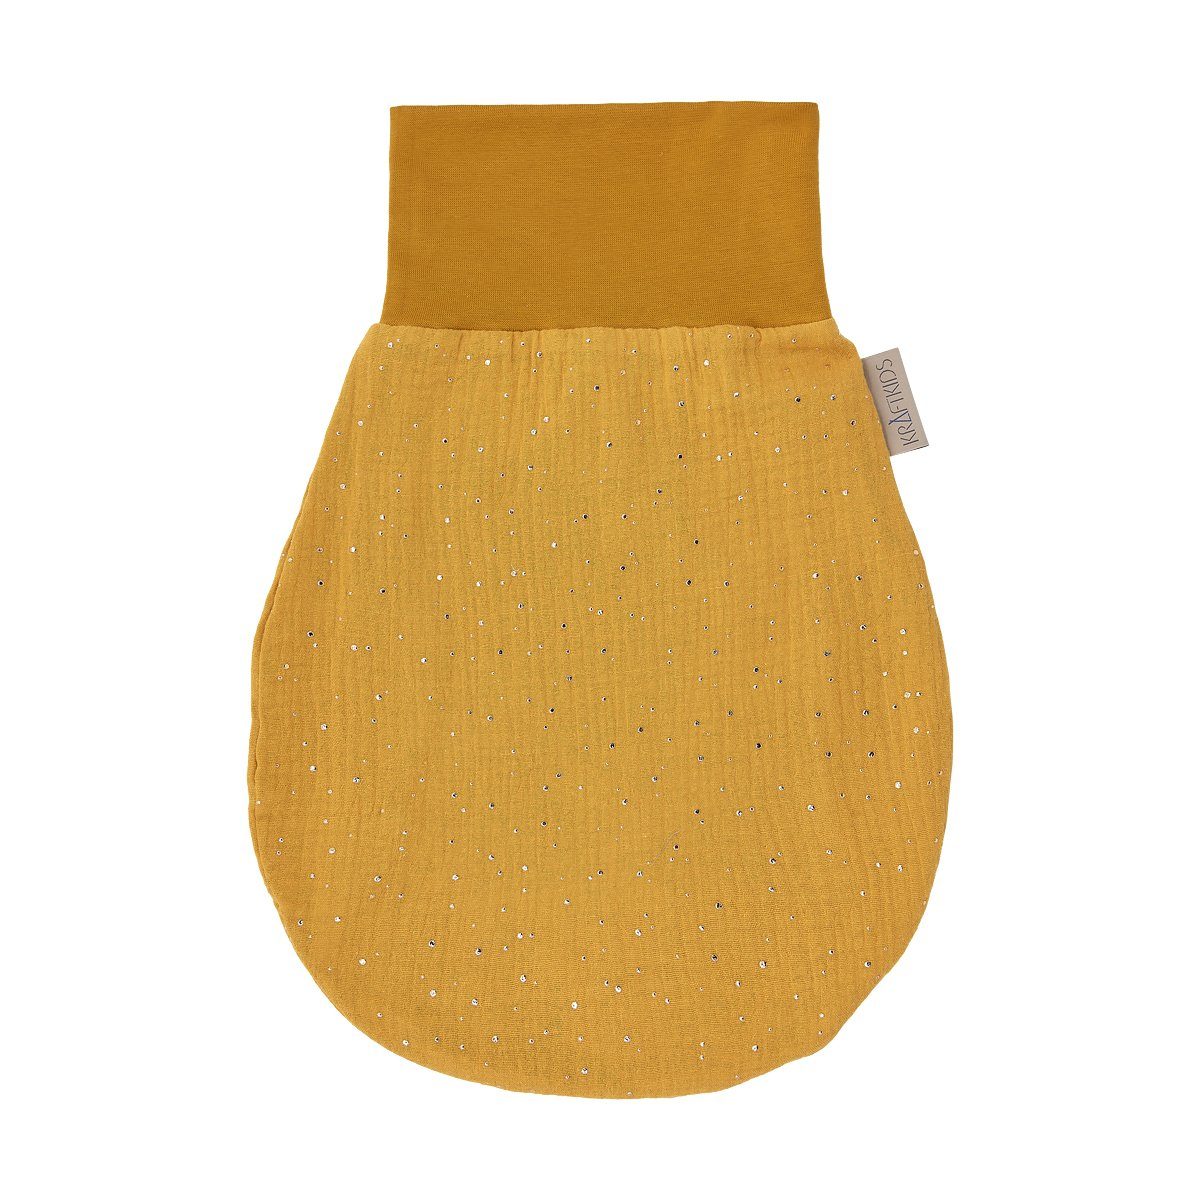 KraftKids Babyschlafsack Musselin goldene Punkte auf Gelb, Herbst/Winter-Variante, 100% Baumwolle, hochwärtiger Stoff, Innen warmer Fleece